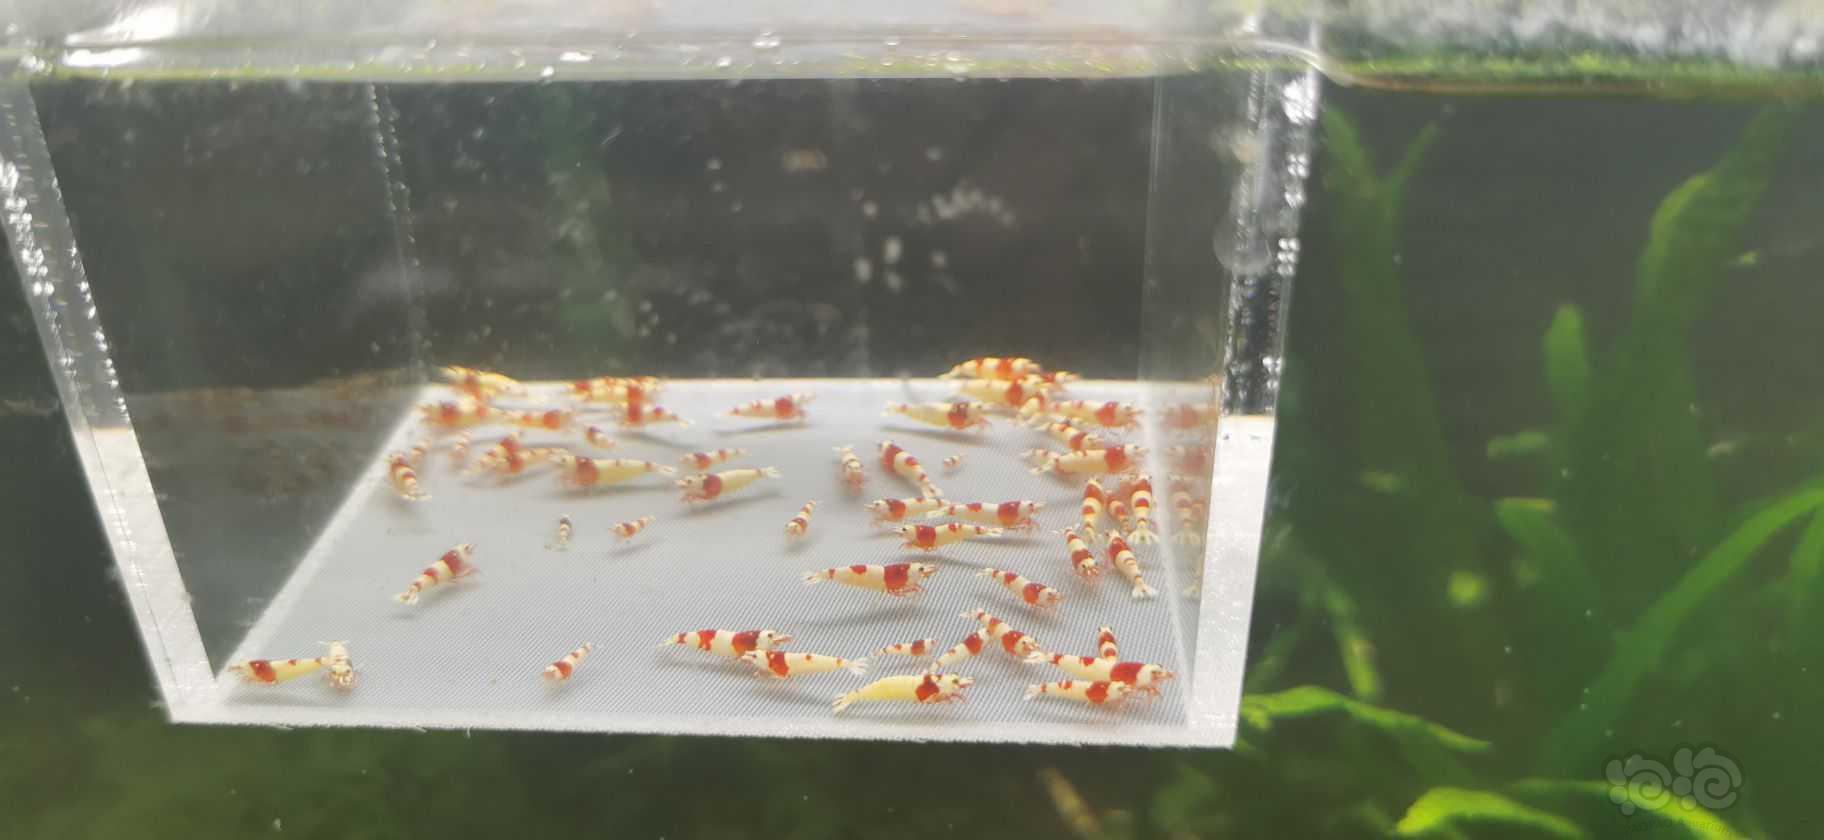 【水晶虾】翻缸出红白小虾-图1